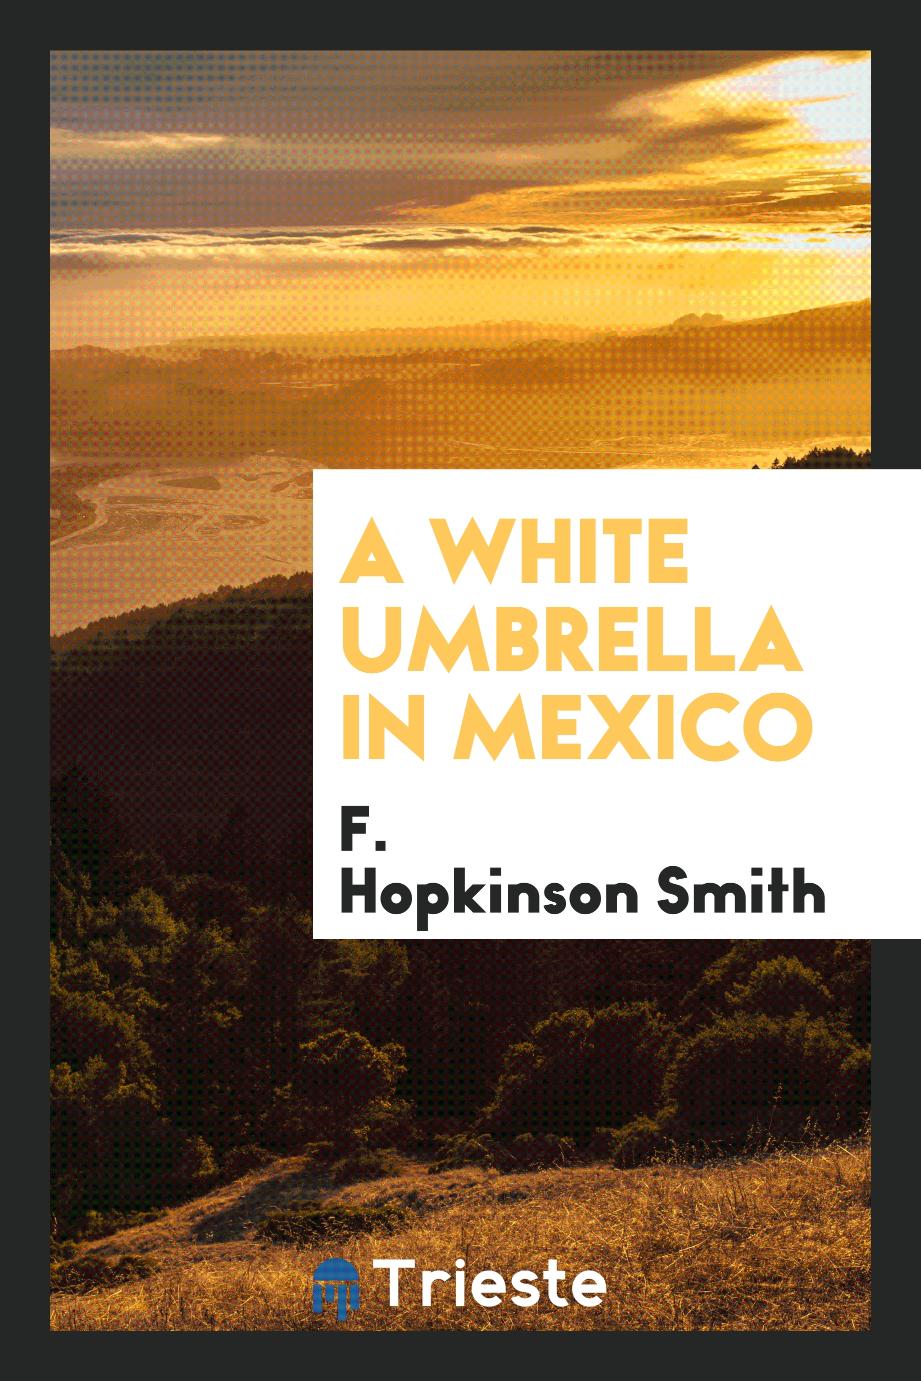 A white umbrella in Mexico